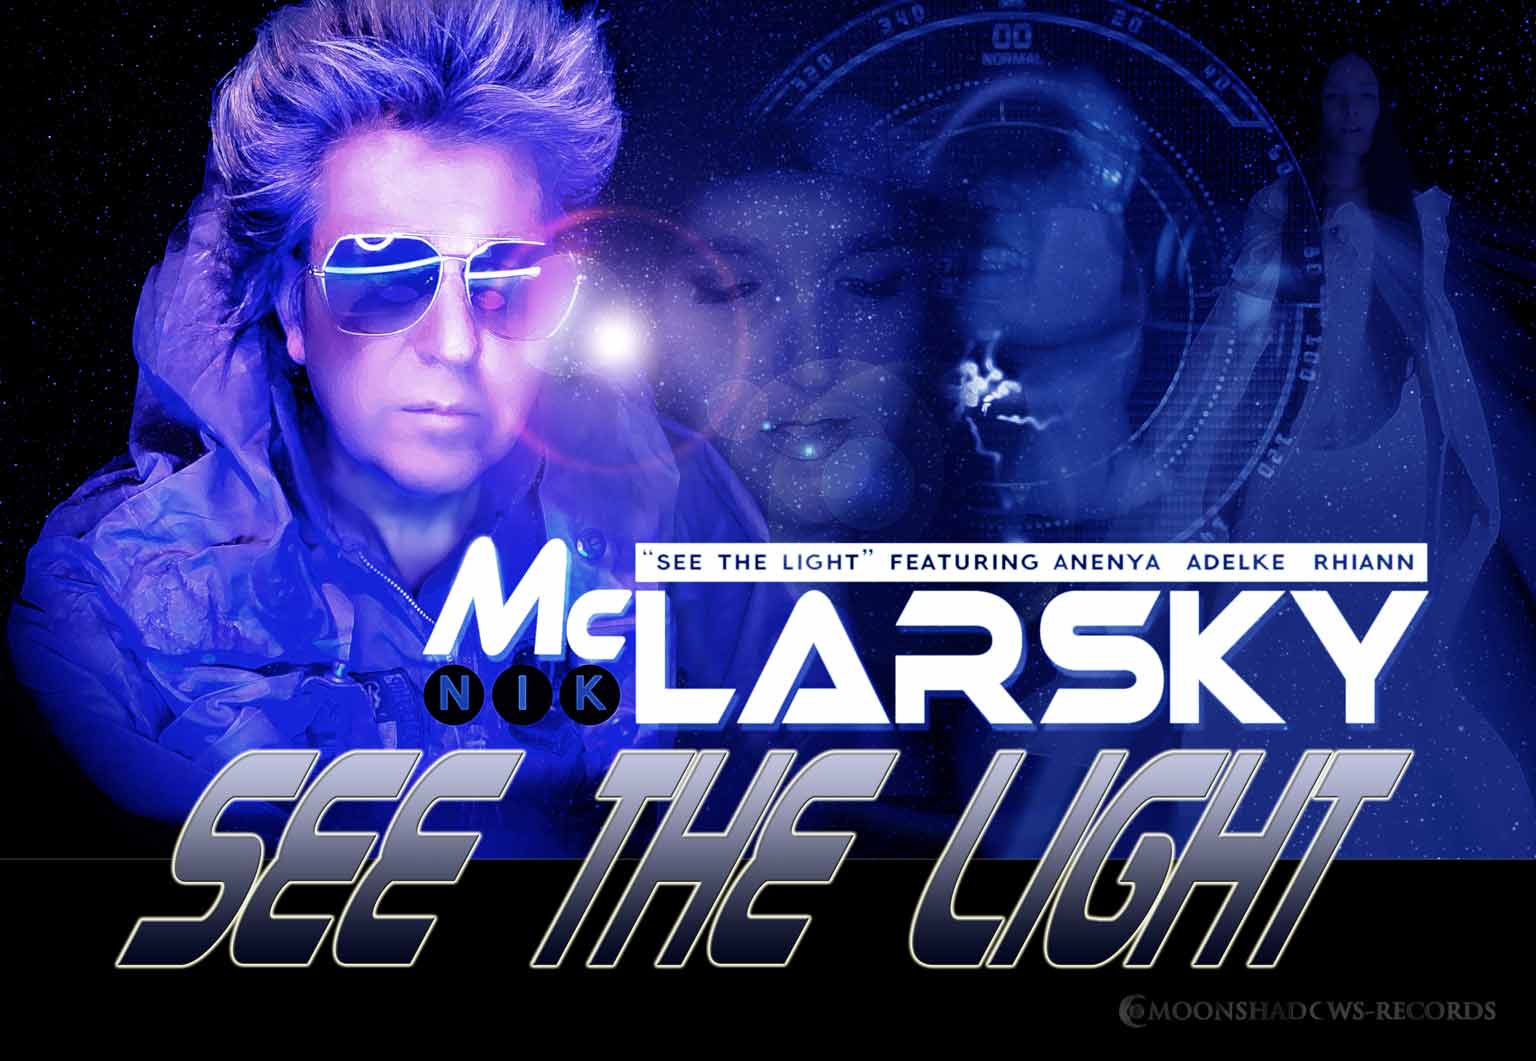 Nik McLarsky - See the light